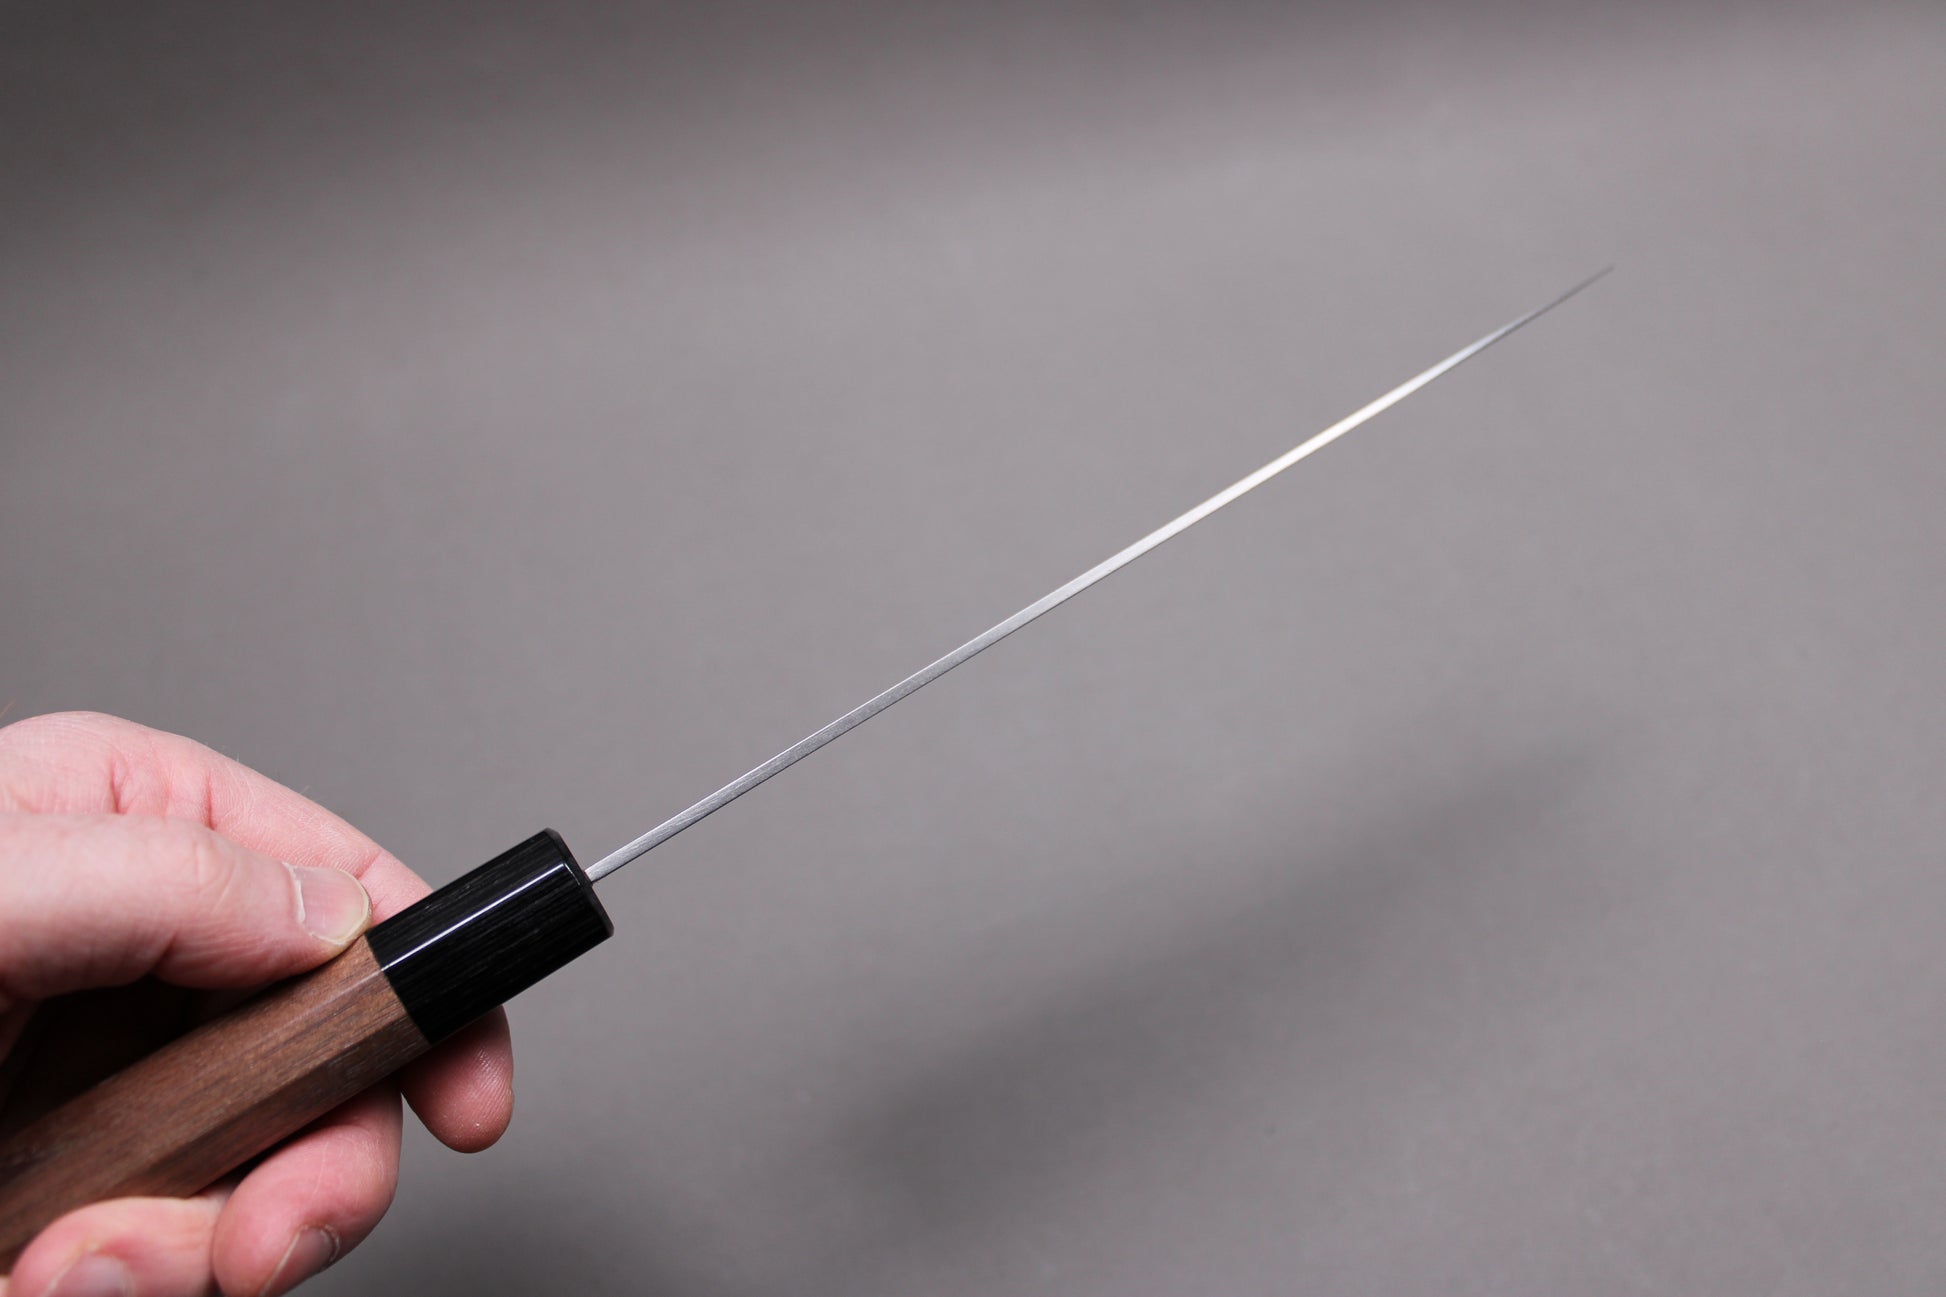  sakai kikumori 210mm gyuto showing distal tapering of knife spine 